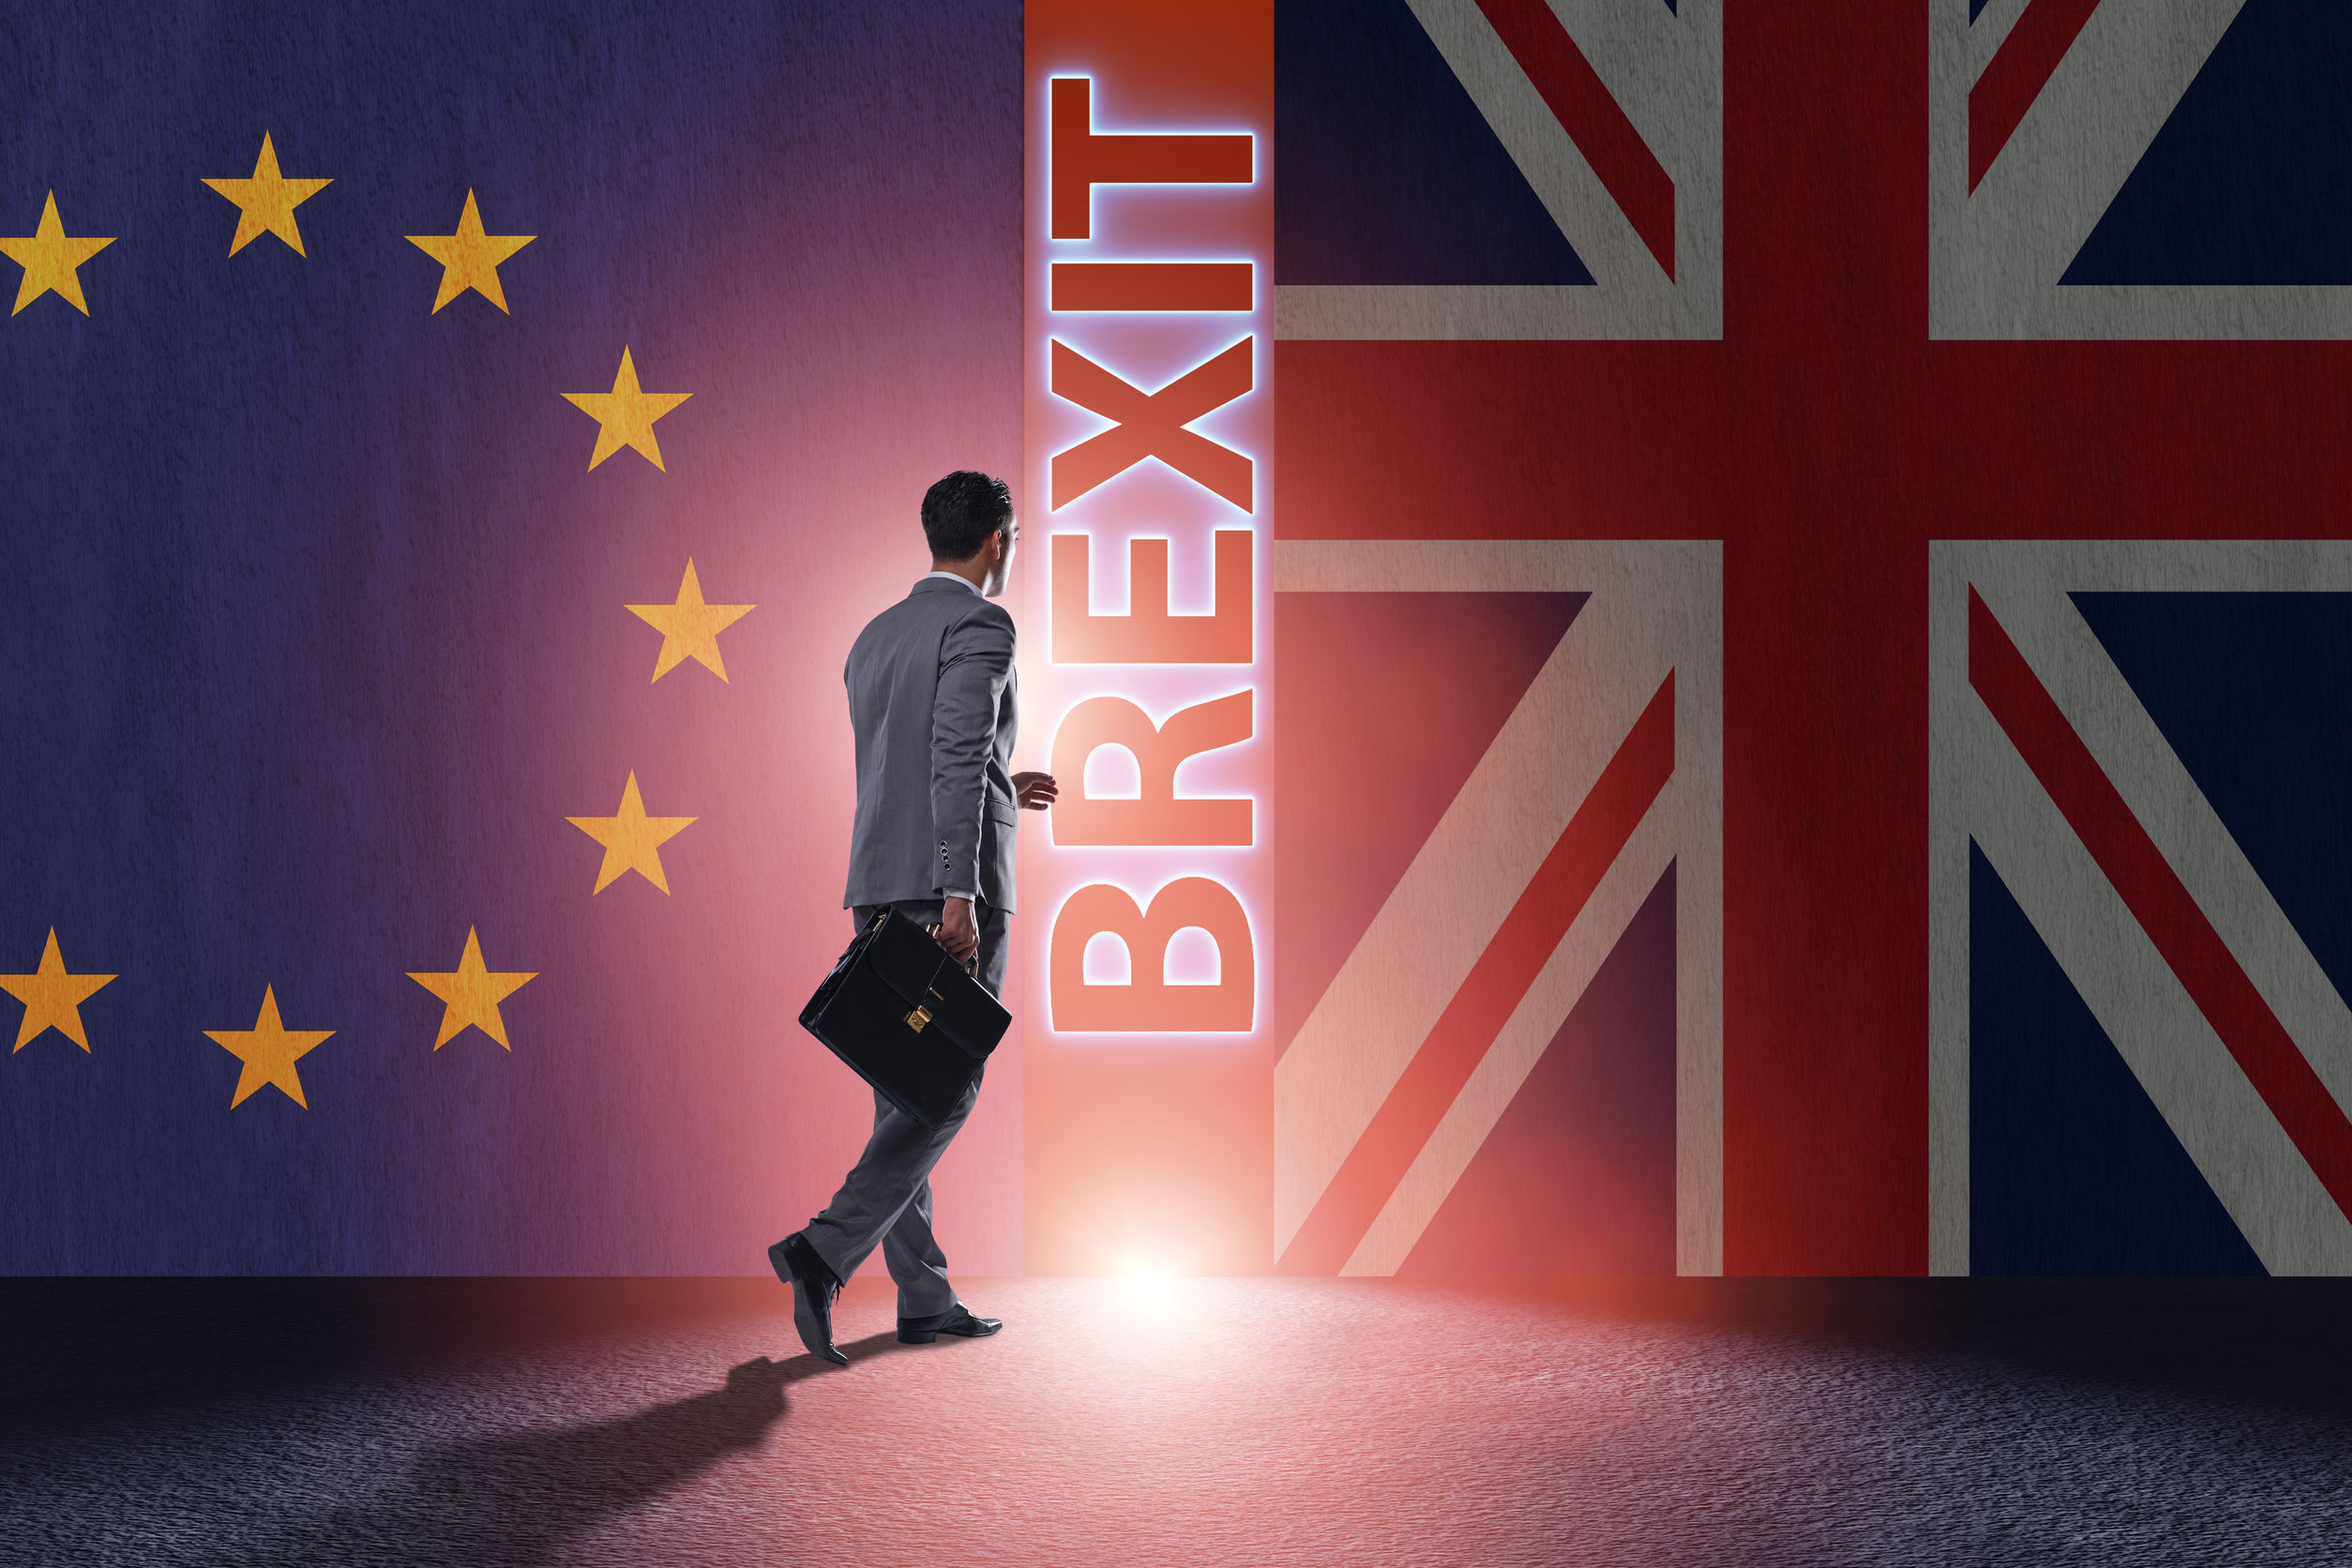 Marea Britanie anunţă că vor exista progrese semnificative în discuţiile de Brexit până în octombrie